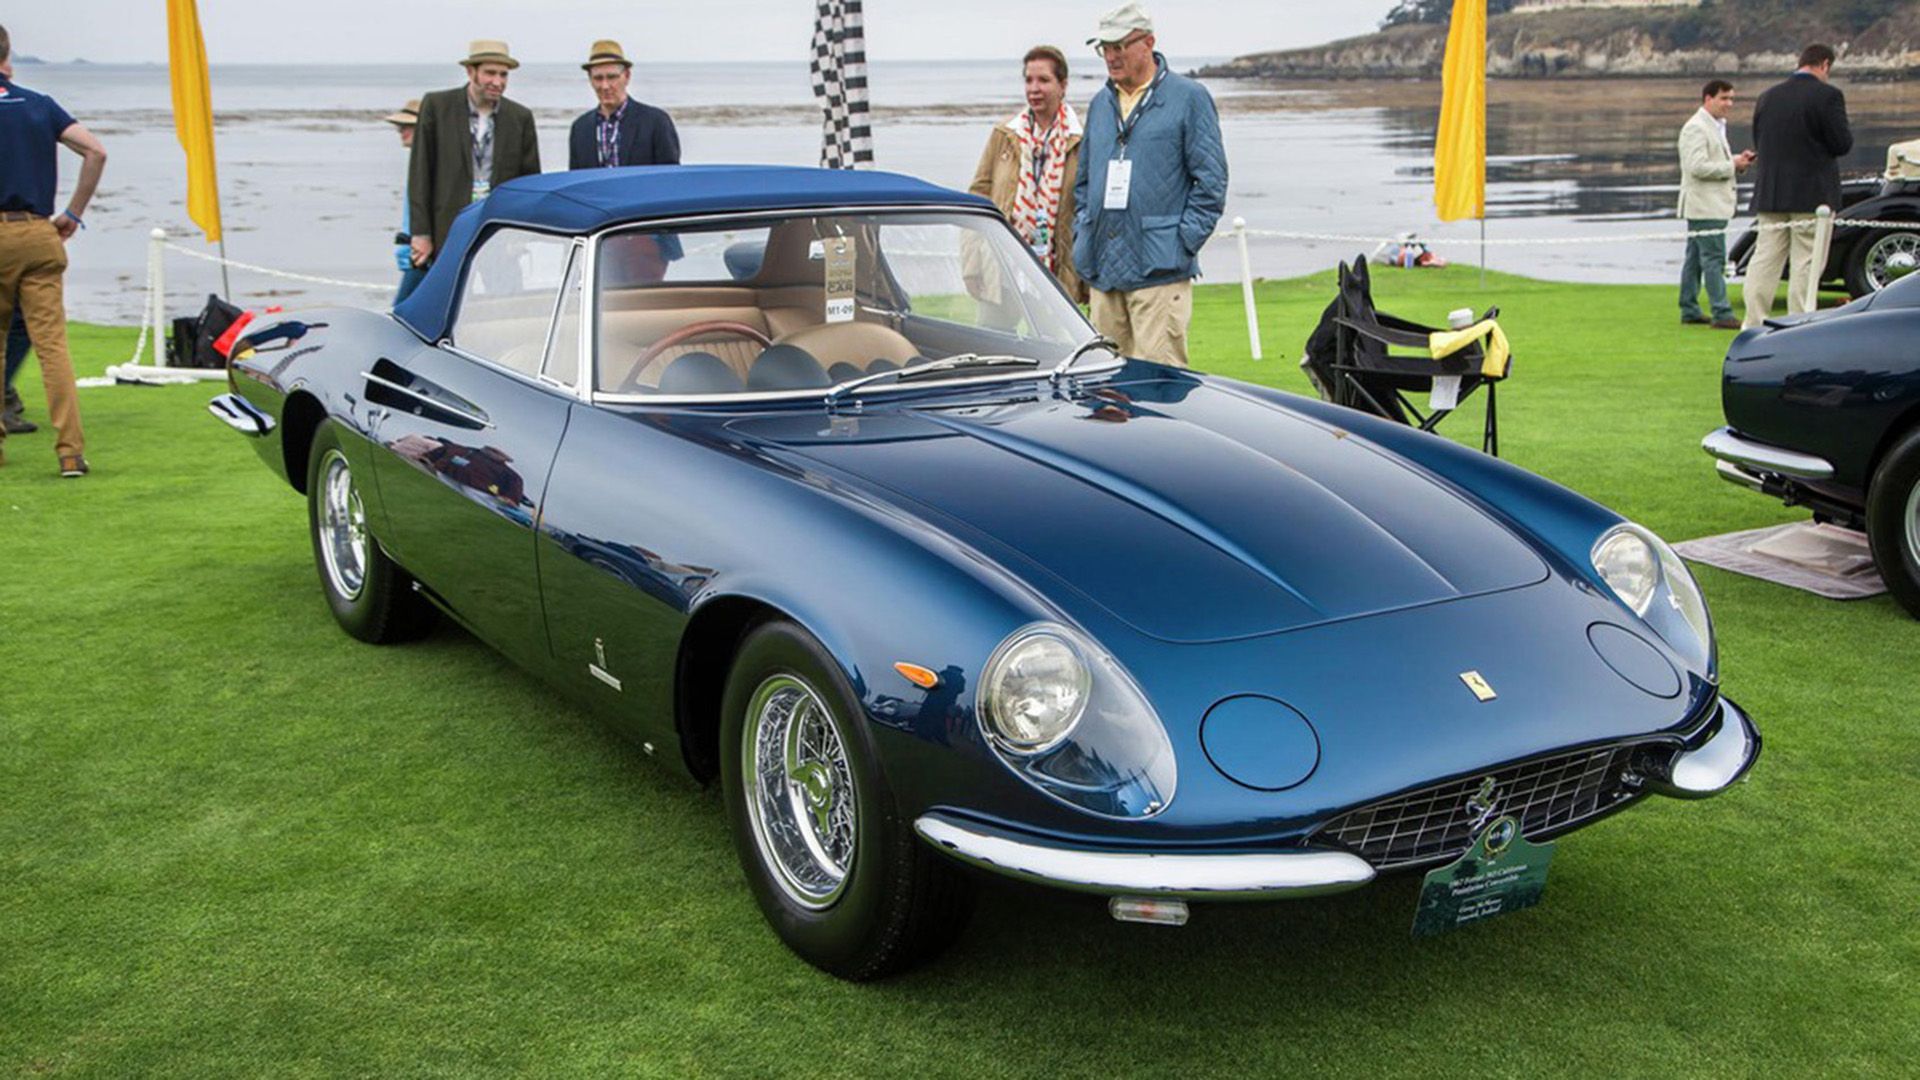 A Blue 1966 Ferrari 365 California